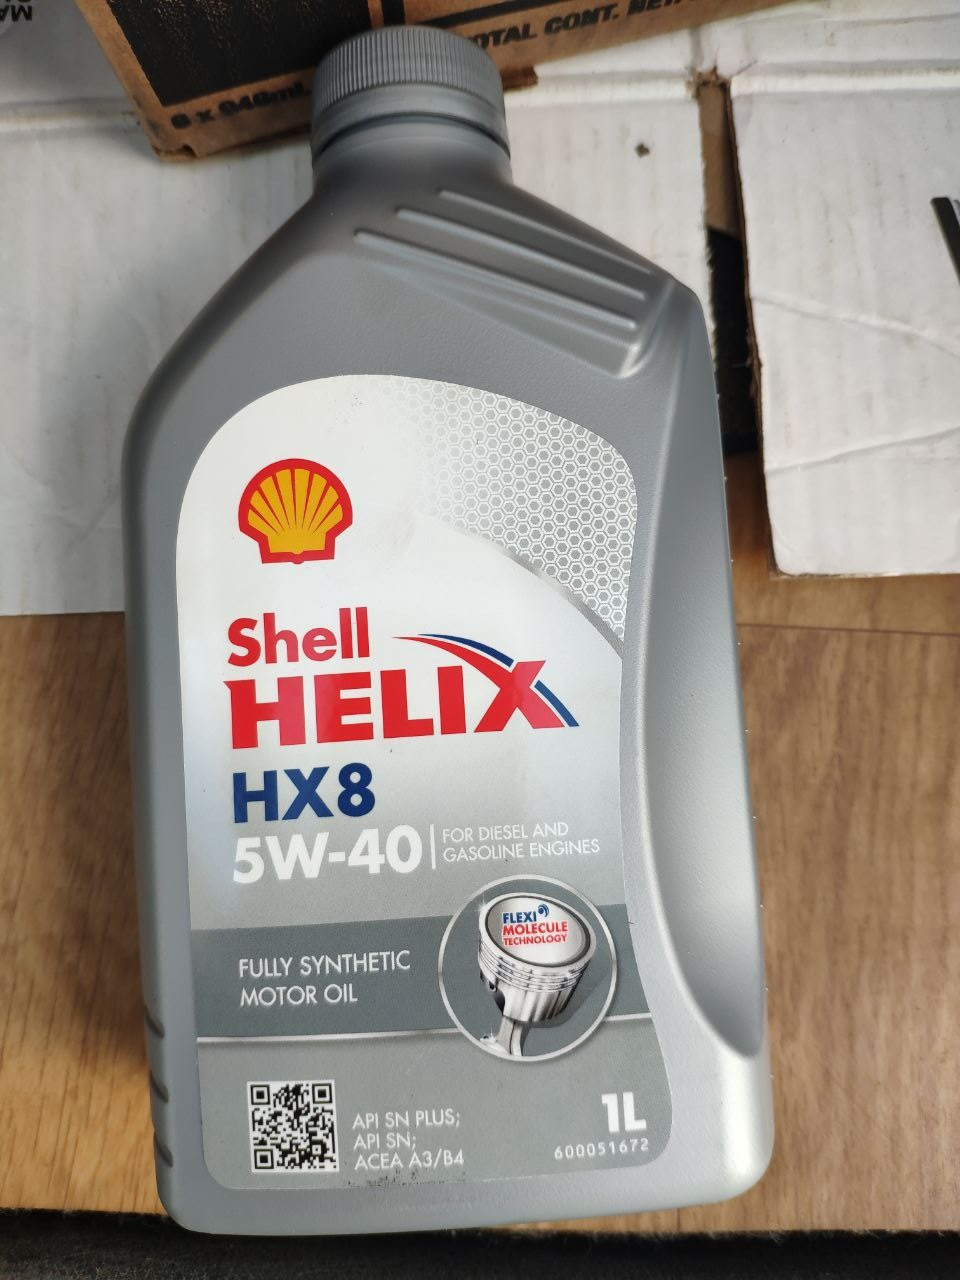 Shell hx8.